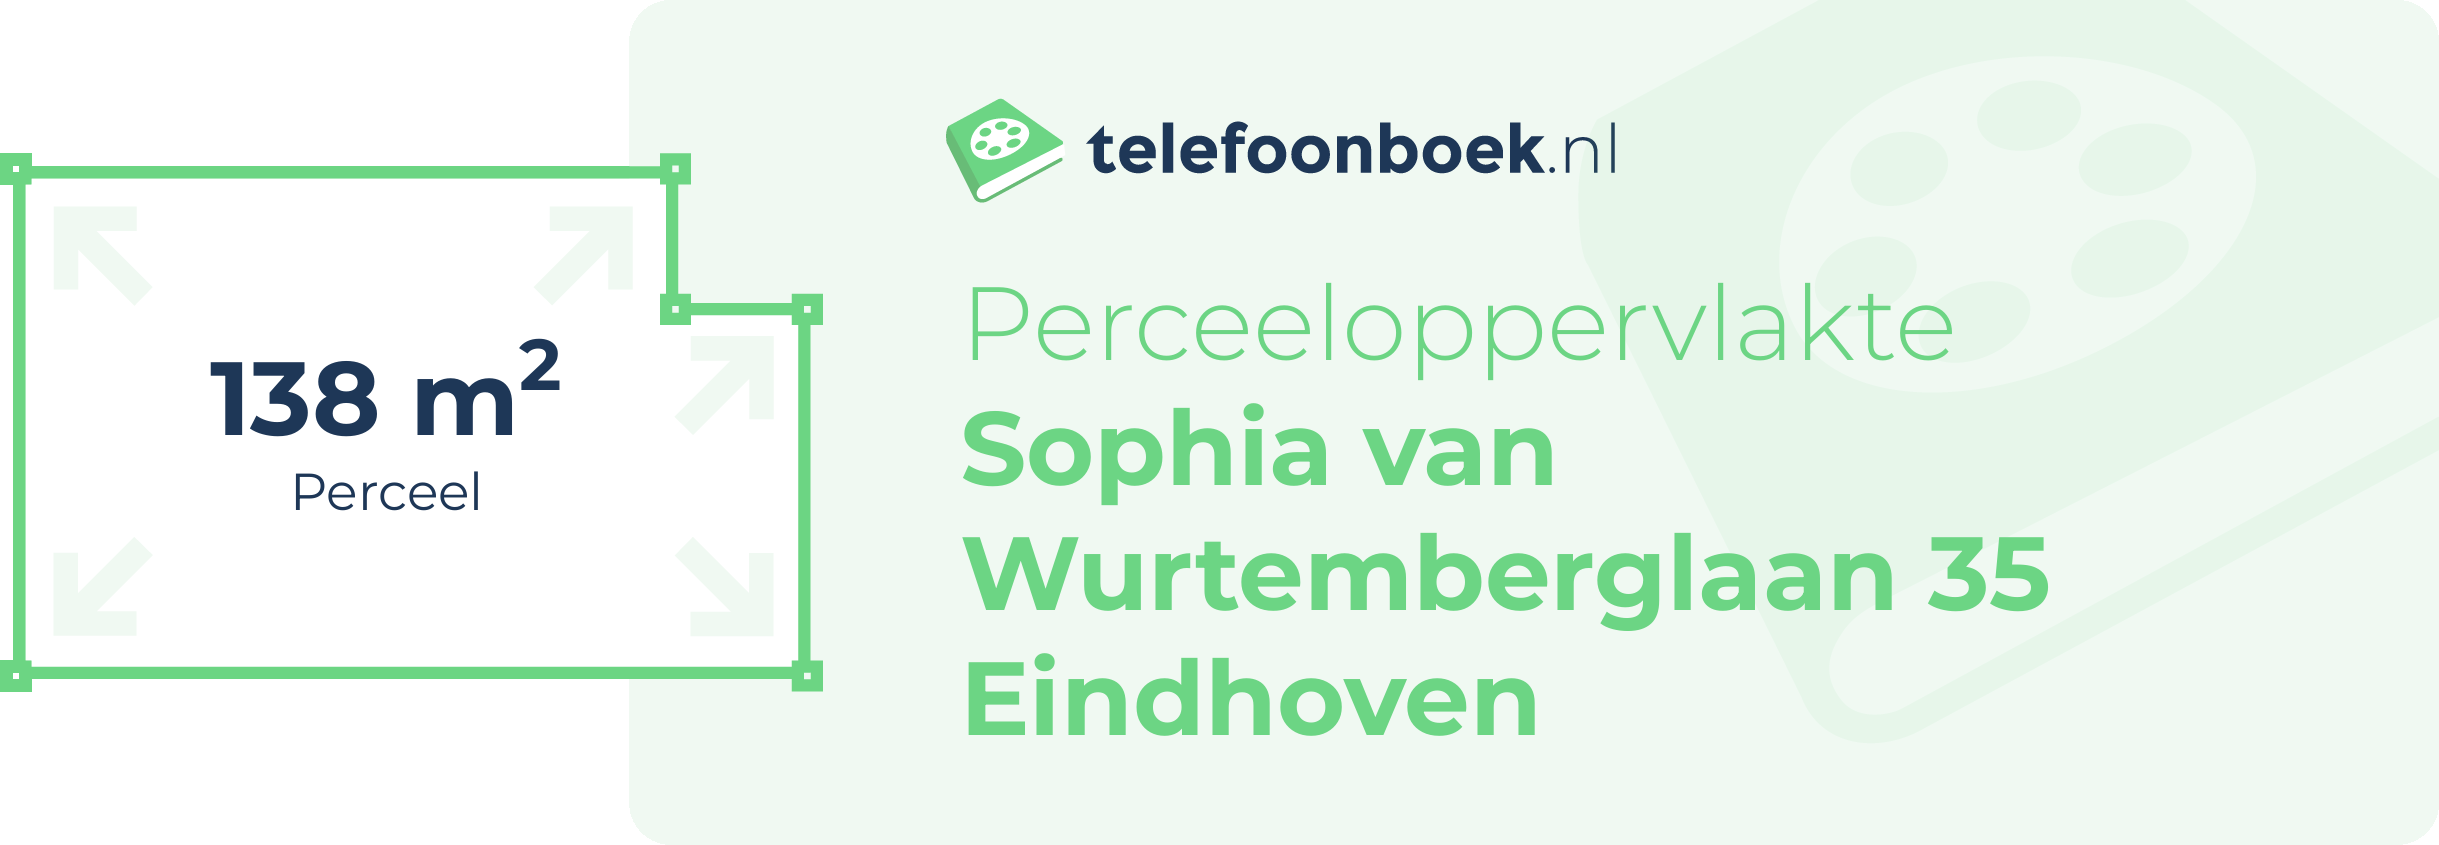 Perceeloppervlakte Sophia Van Wurtemberglaan 35 Eindhoven